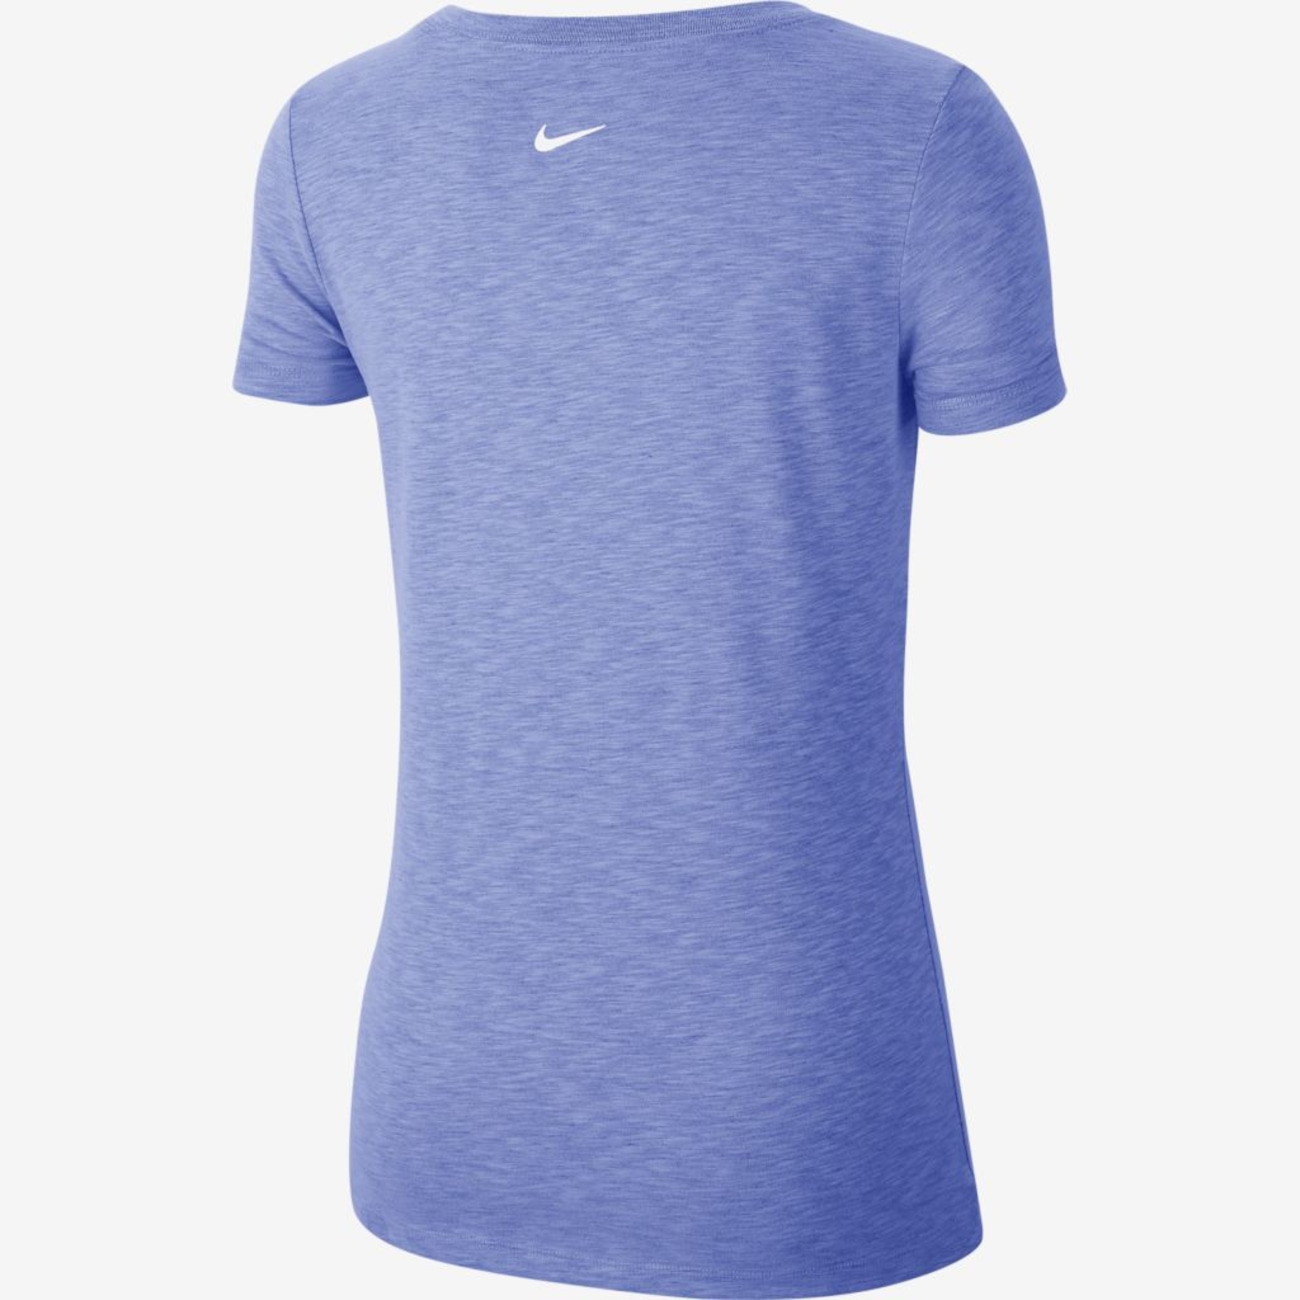 Oferta de Camiseta Nike Feminina Nike - Just Do It